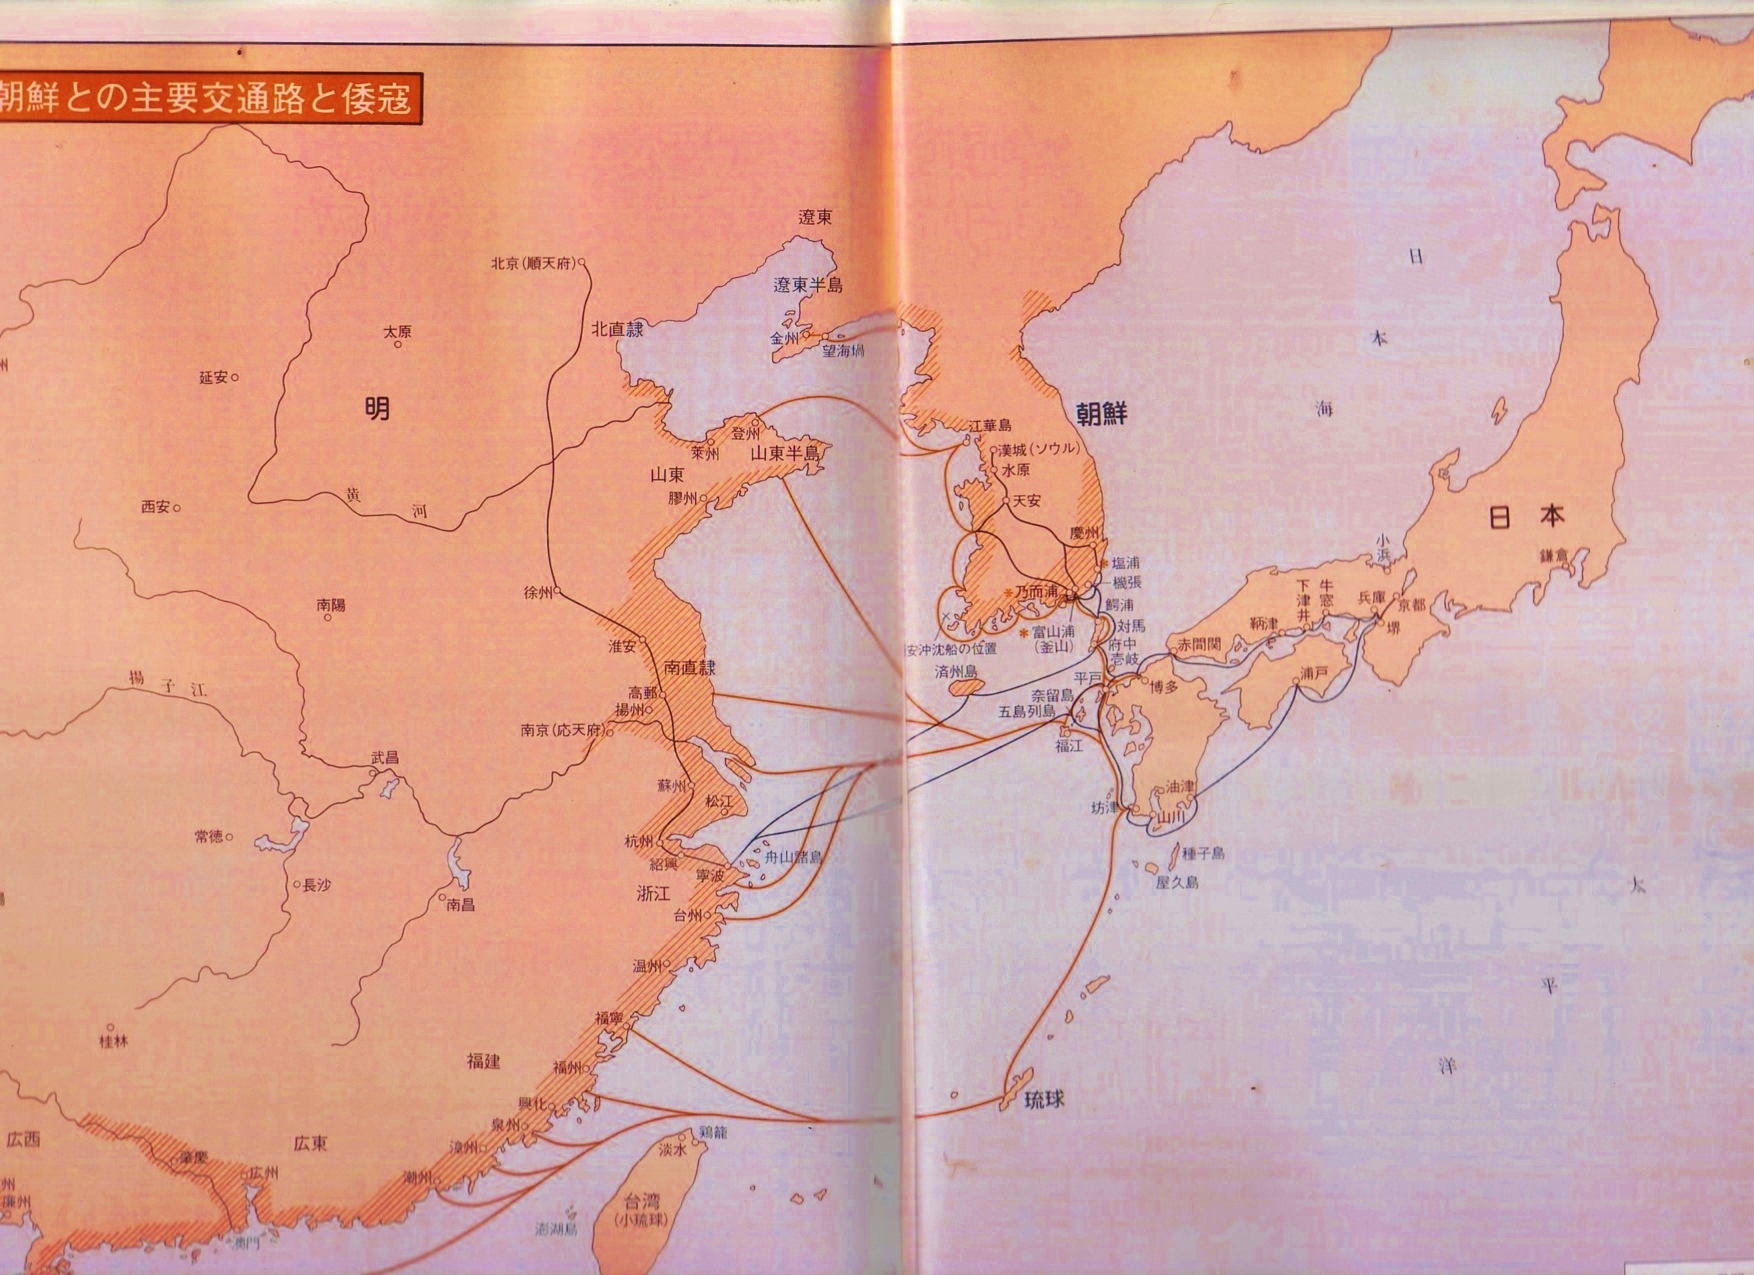 明・朝鮮との主要交通路と倭寇